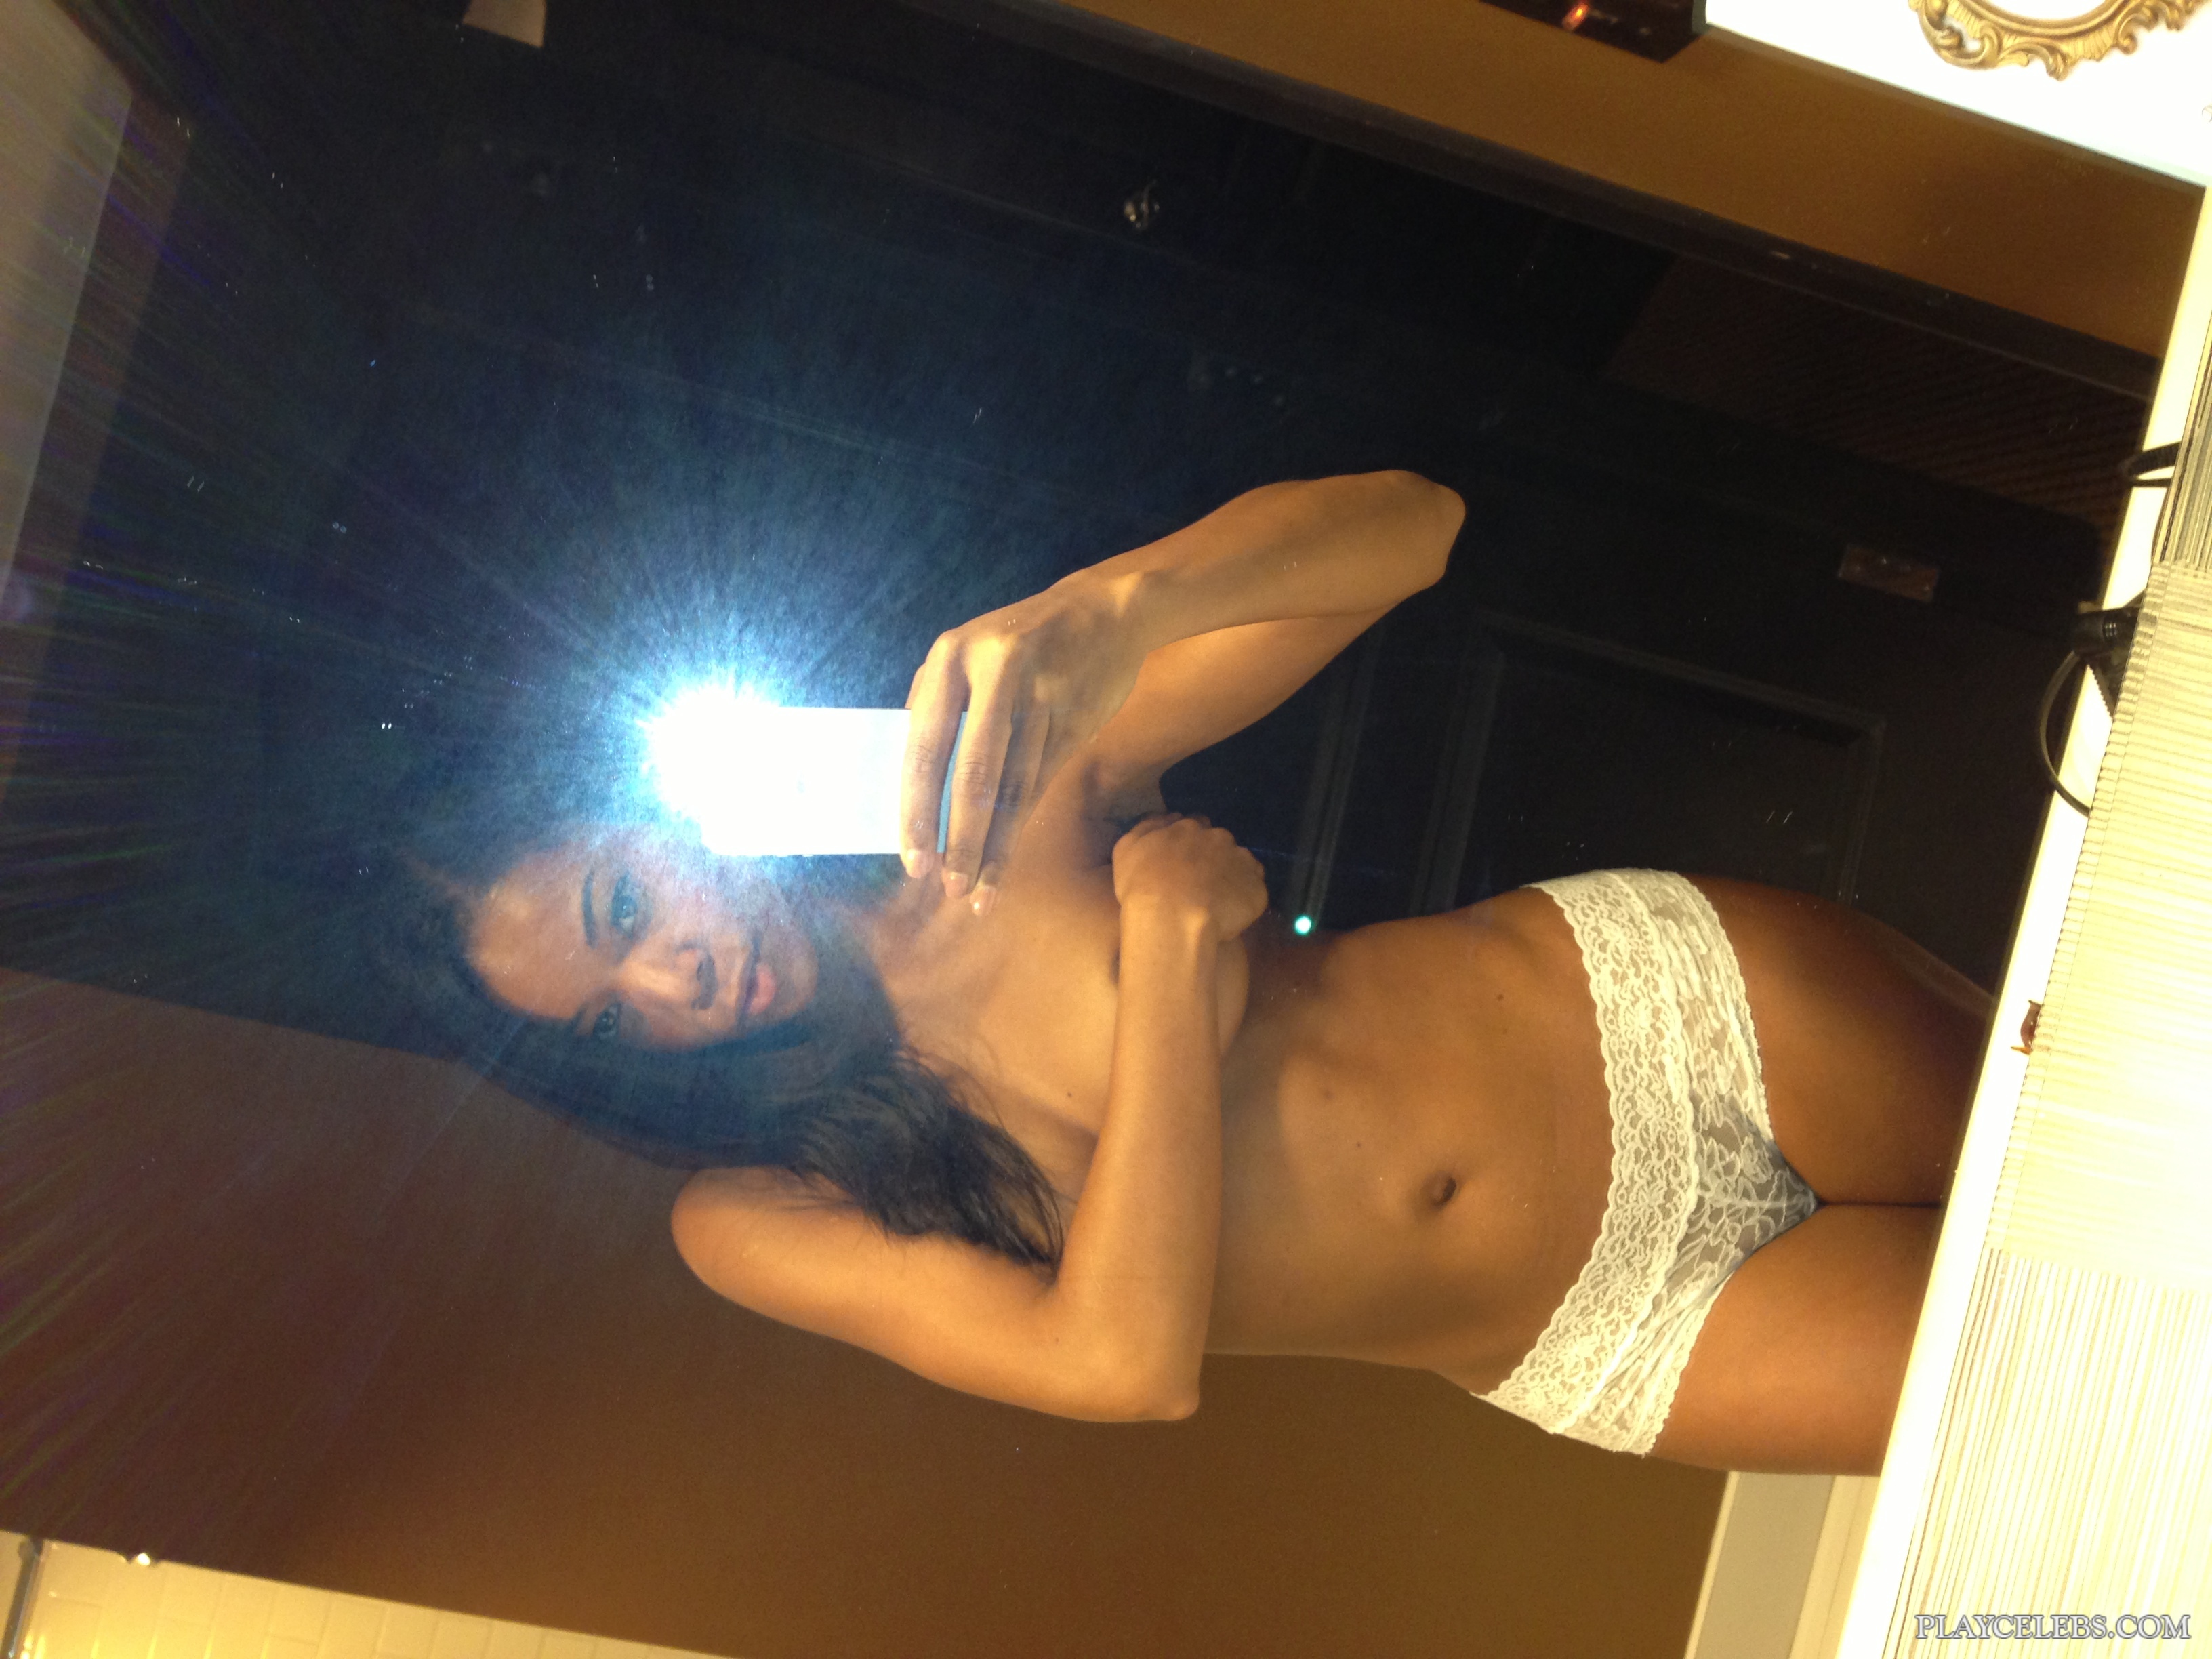 Gabrielle union leaked naked photos 👉 👌 Cynthia bunnay leake